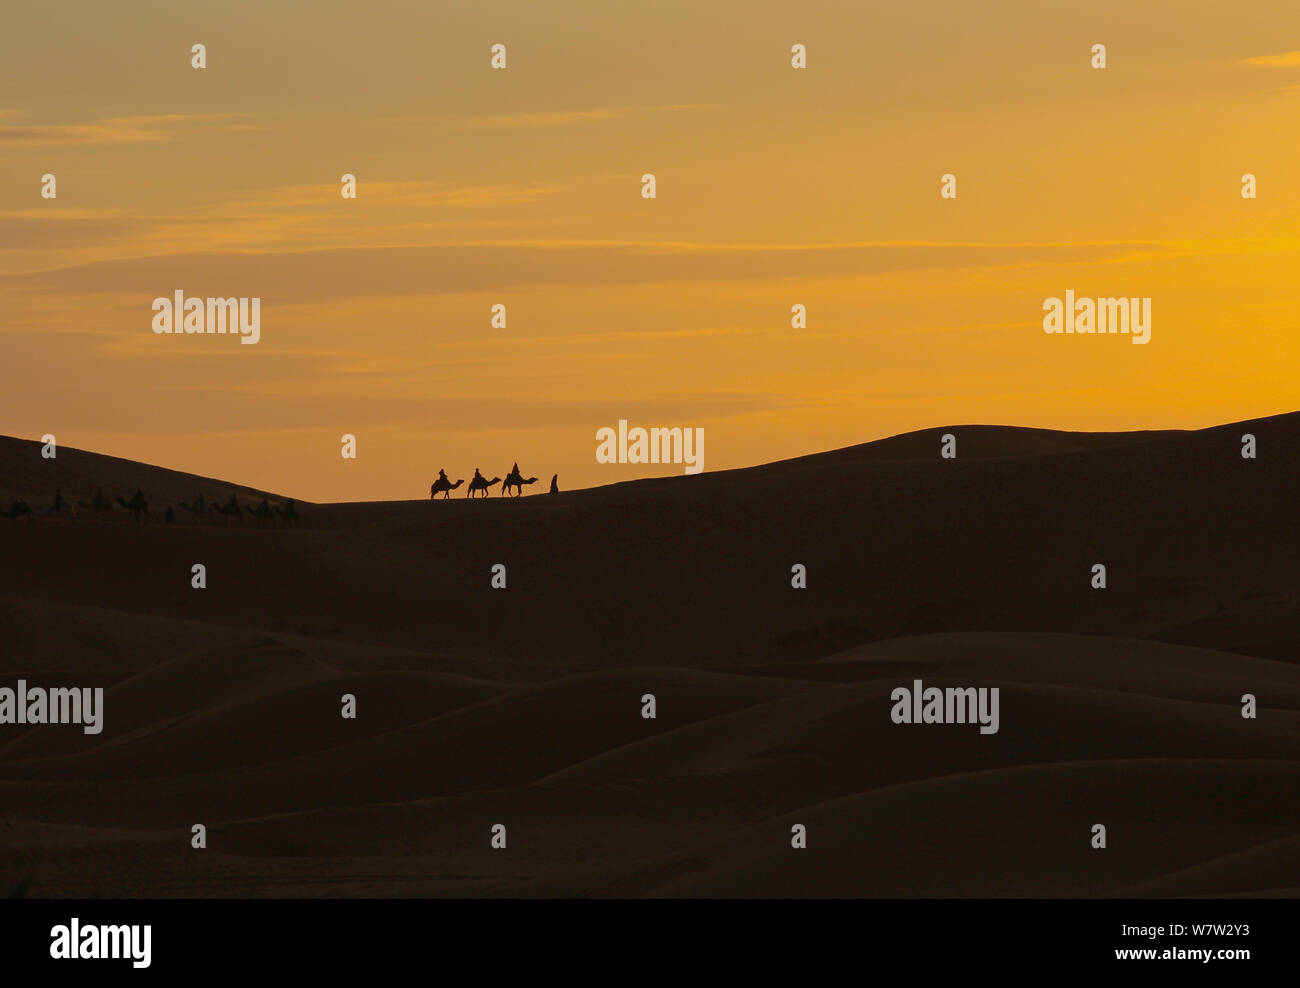 Nomaden auf Dromedaren (Kamele) bei Sonnenuntergang in der Sahara Wüste von Marokko Foto Stock